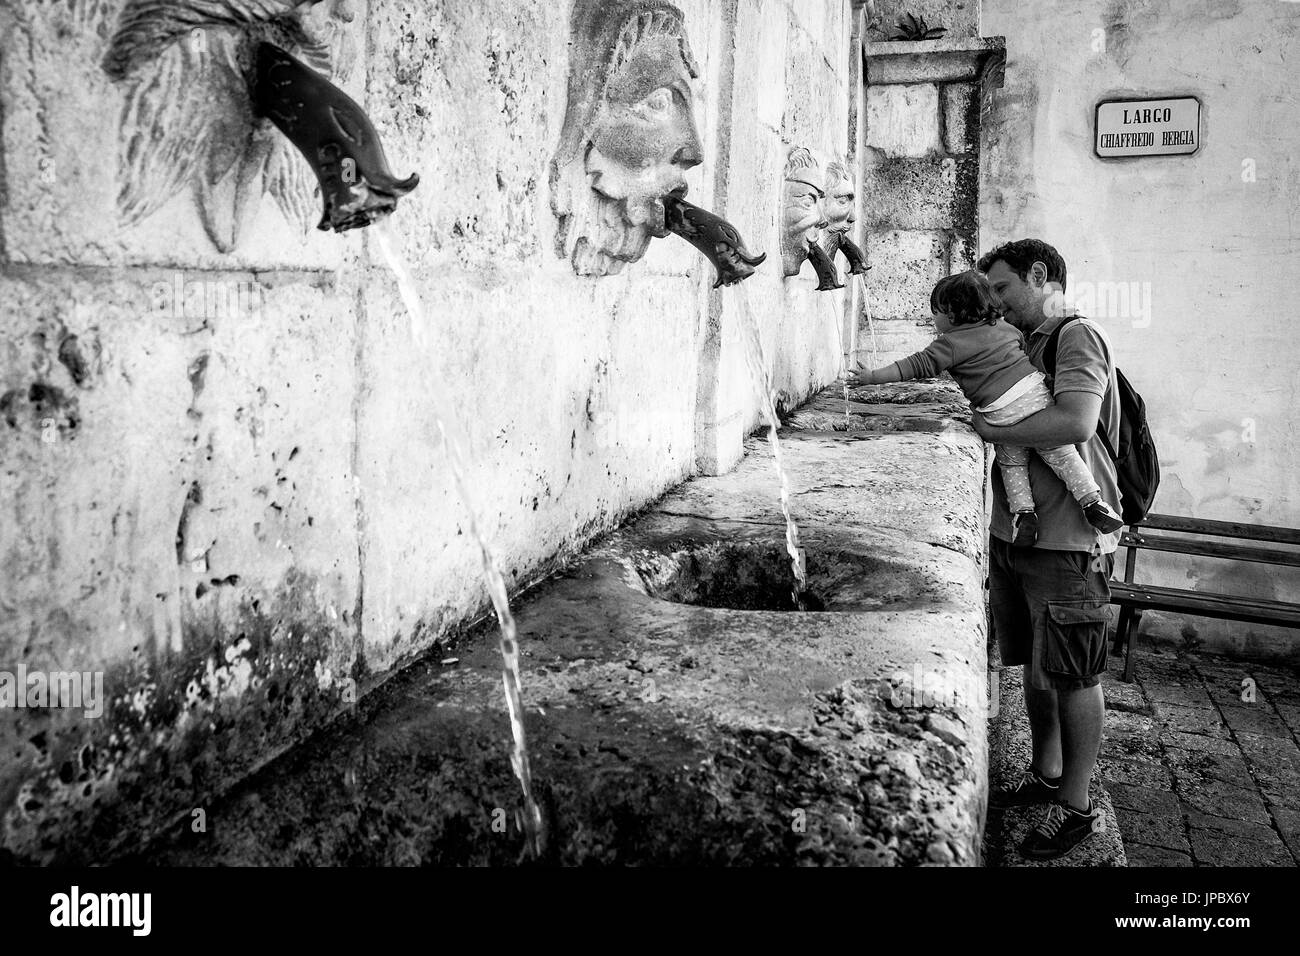 Scanno, Abruzzo, Italie centrale, Europe. Rafraîchissement à la fontaine Sarracco en noir et blanc. Banque D'Images